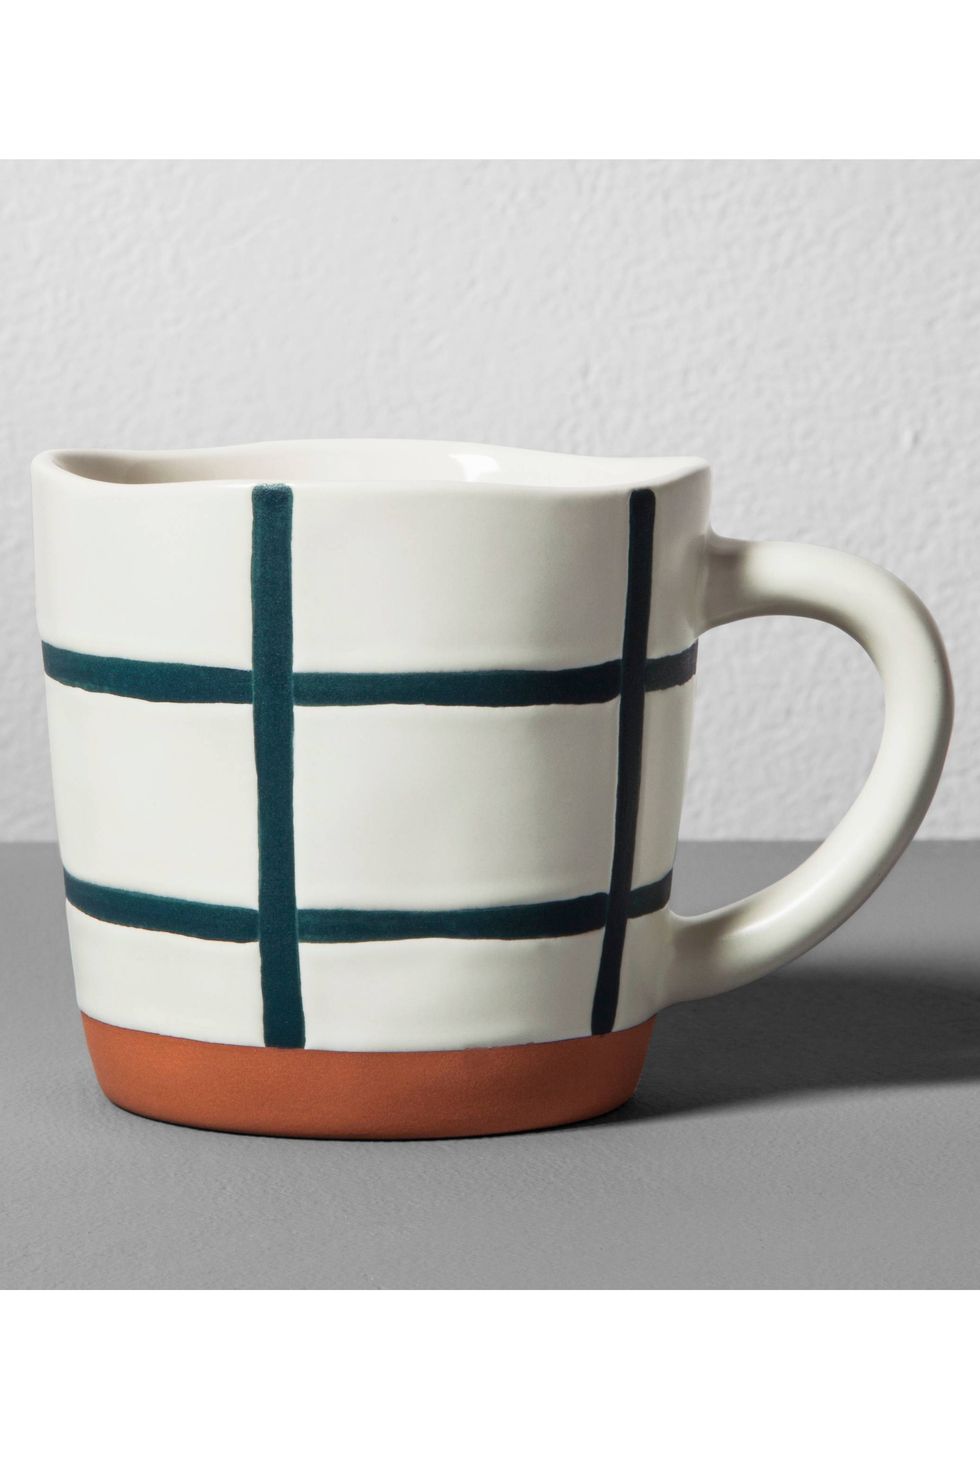 Mug, Cup, White, Porcelain, Cup, Drinkware, Tableware, Serveware, Ceramic, Coffee cup, 